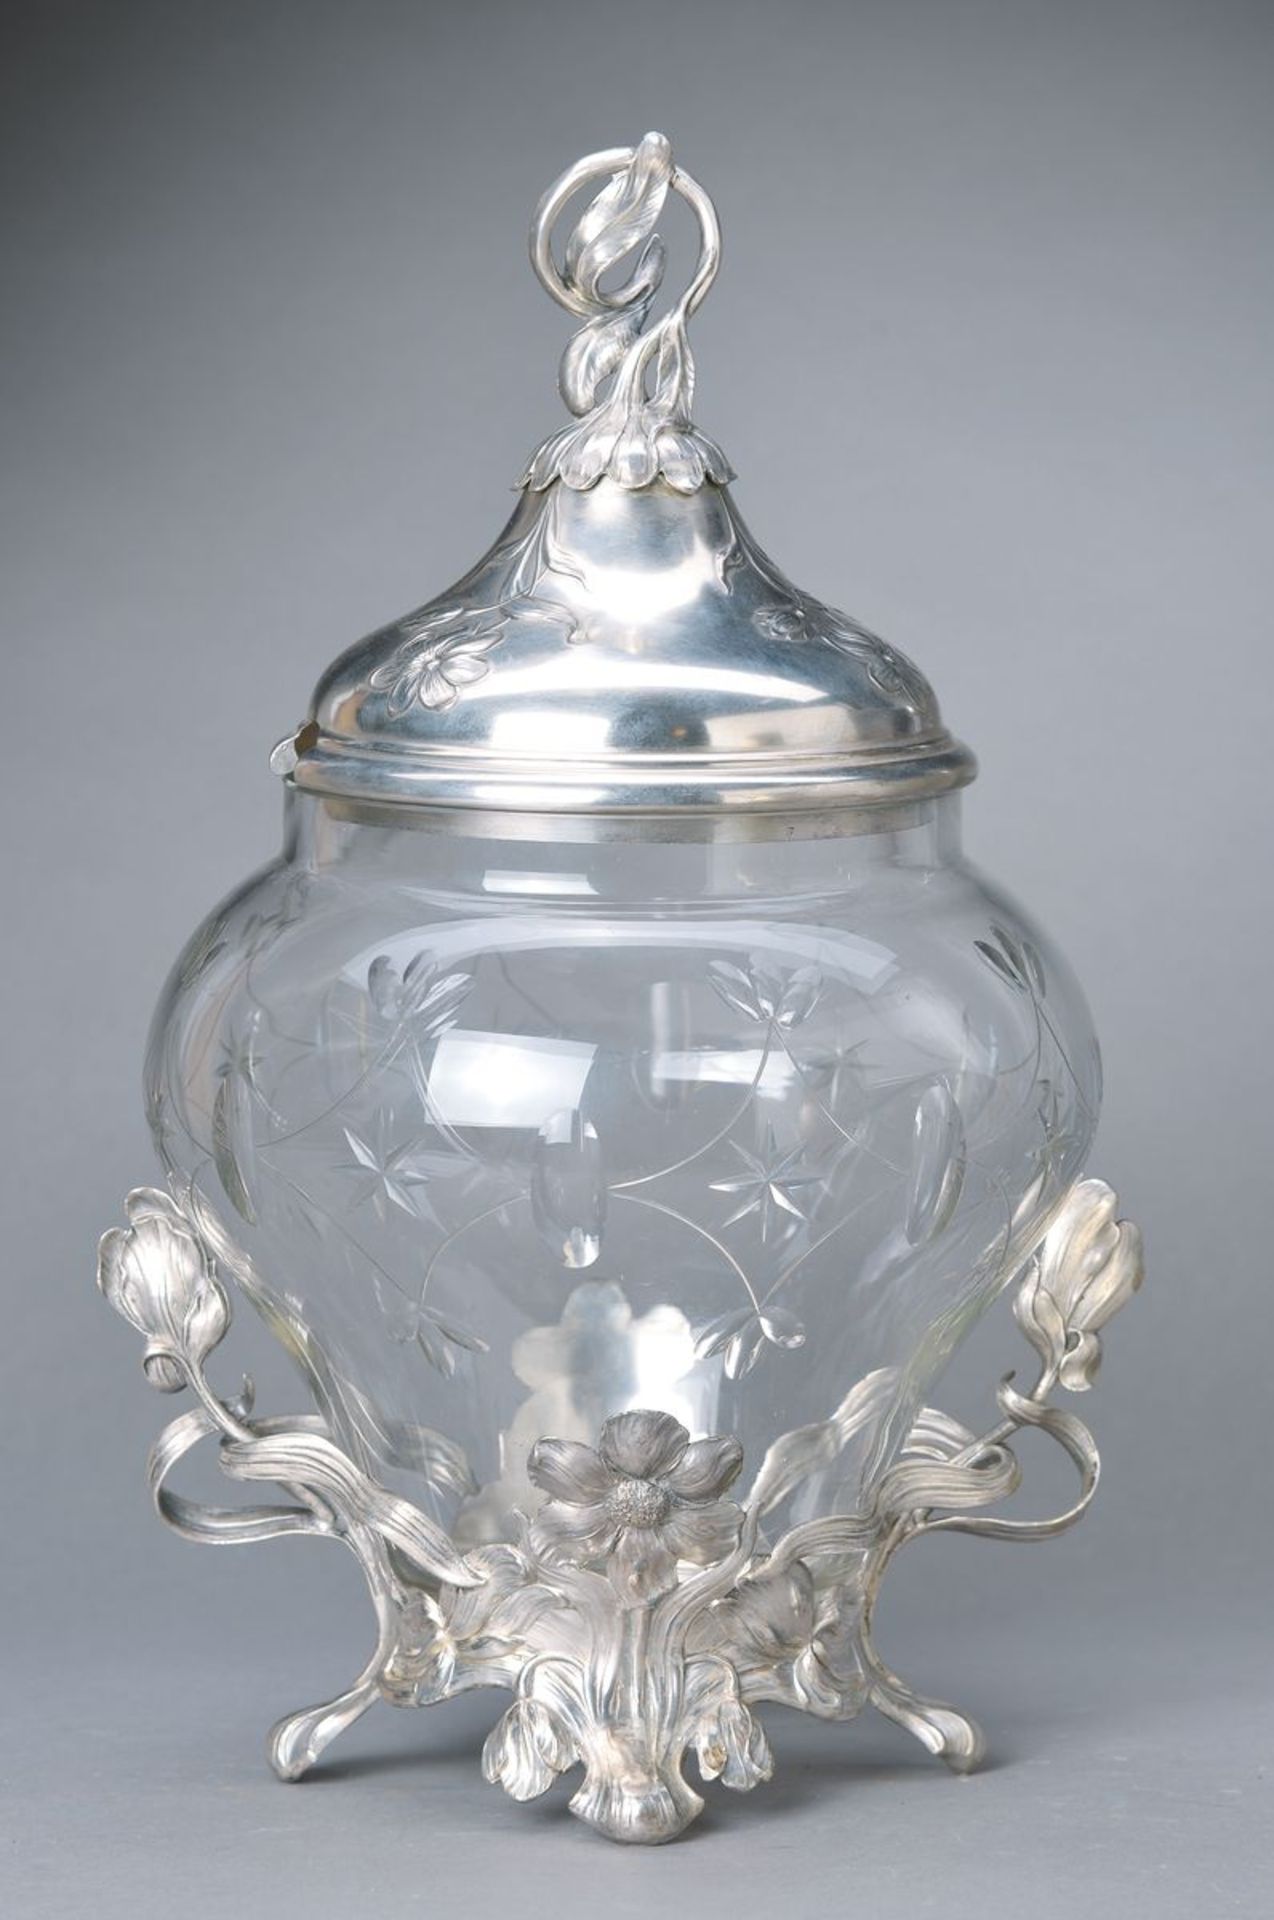 Jugendstilbowle, deutsch, um 1900, Metallfassung versilbert und reich verziert, Glaskorpus